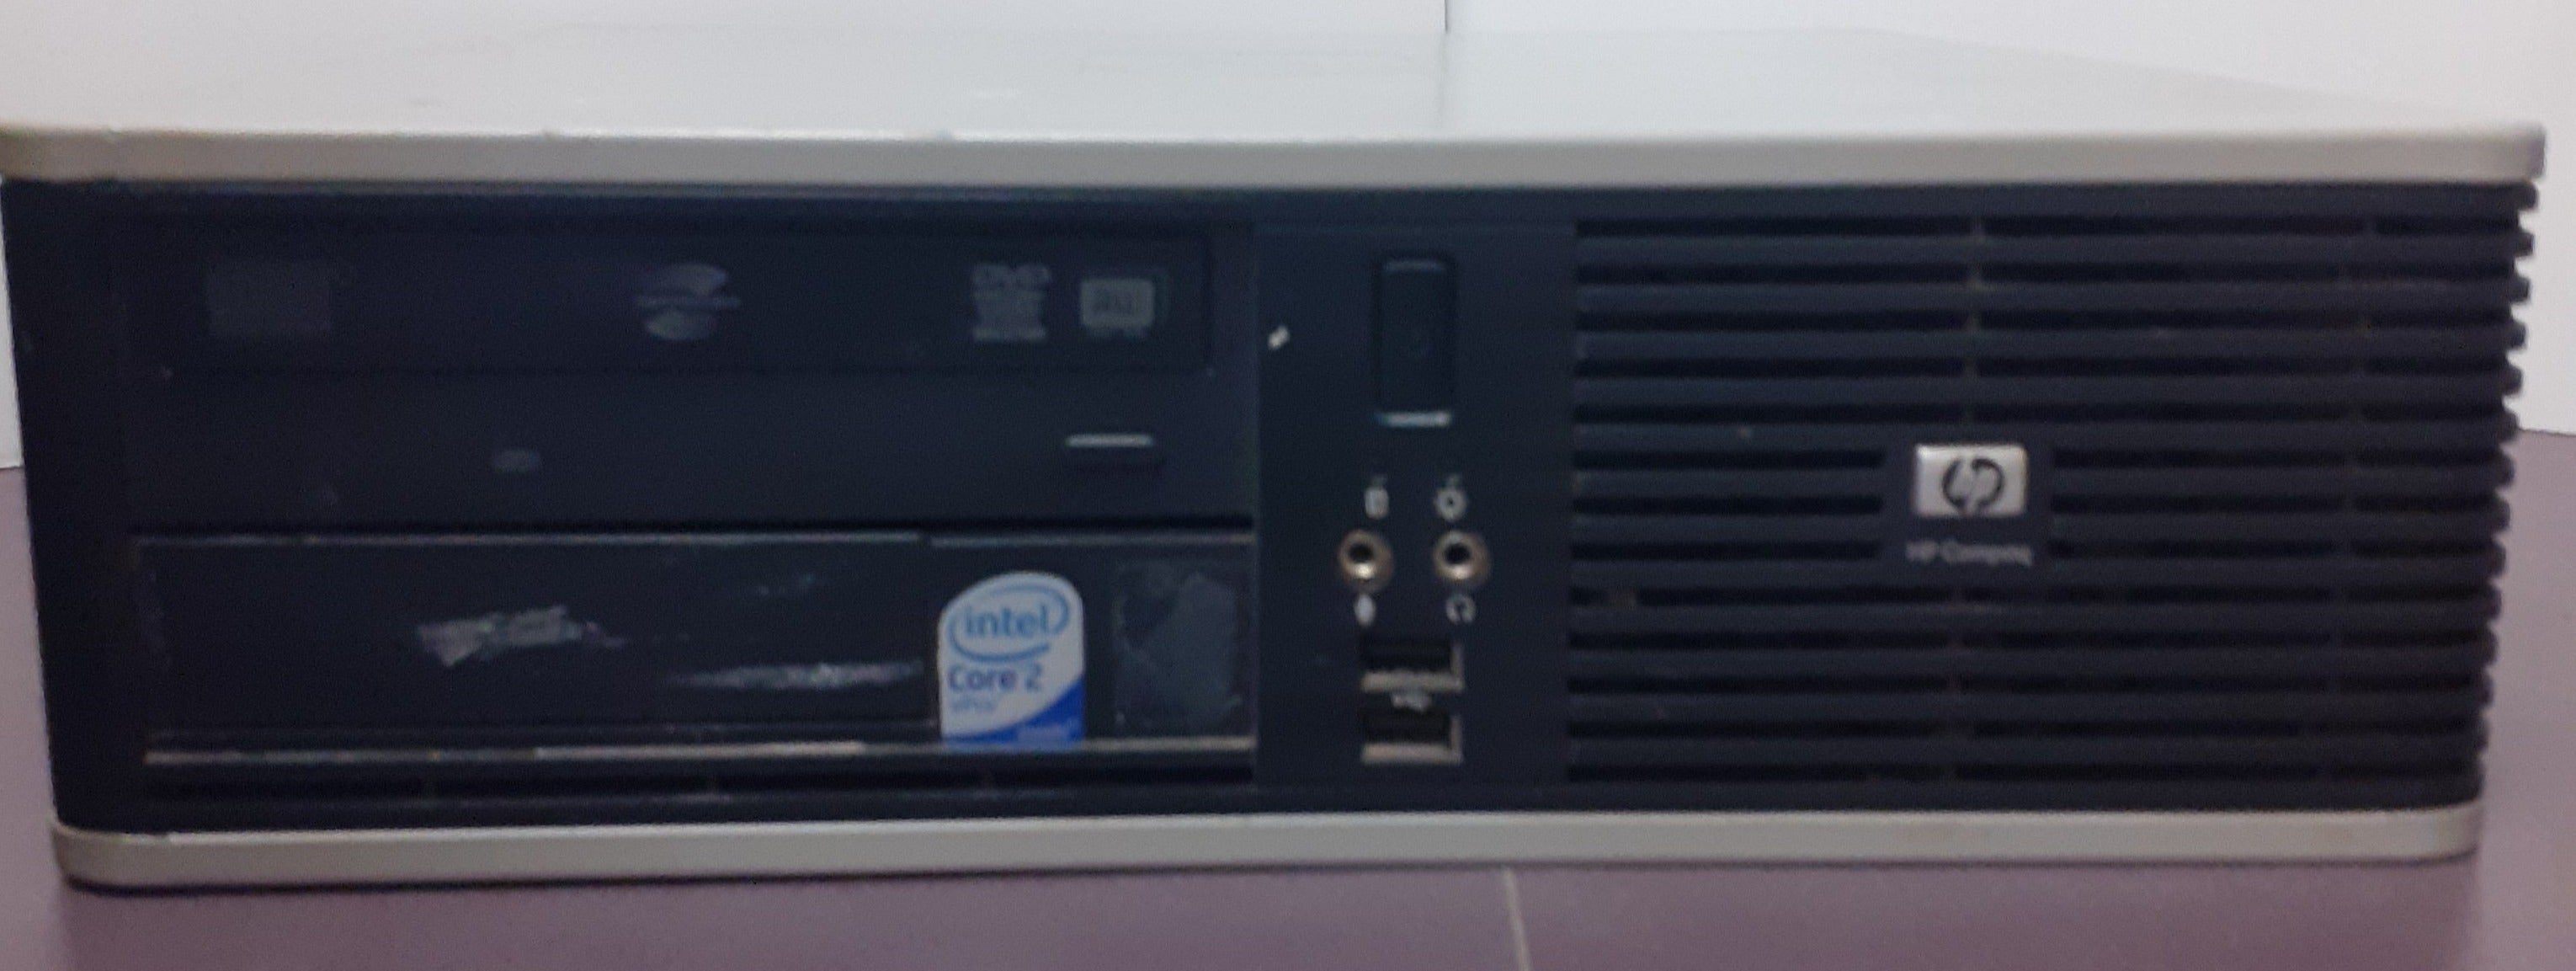 Ordinateur reconditionné - HP Intel Dual Core E6750